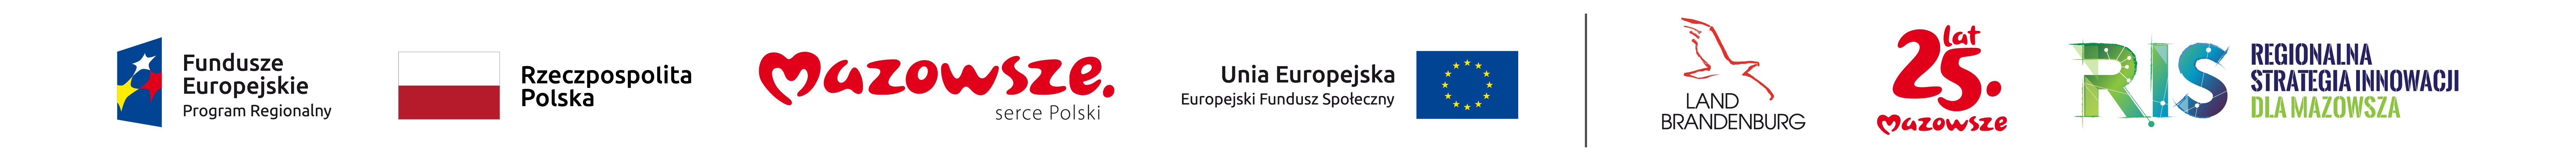 Belka z logotypami na bannerze głównym: Fundusze Europejskie, RP, Mazowsze, UE, Brandenburgia